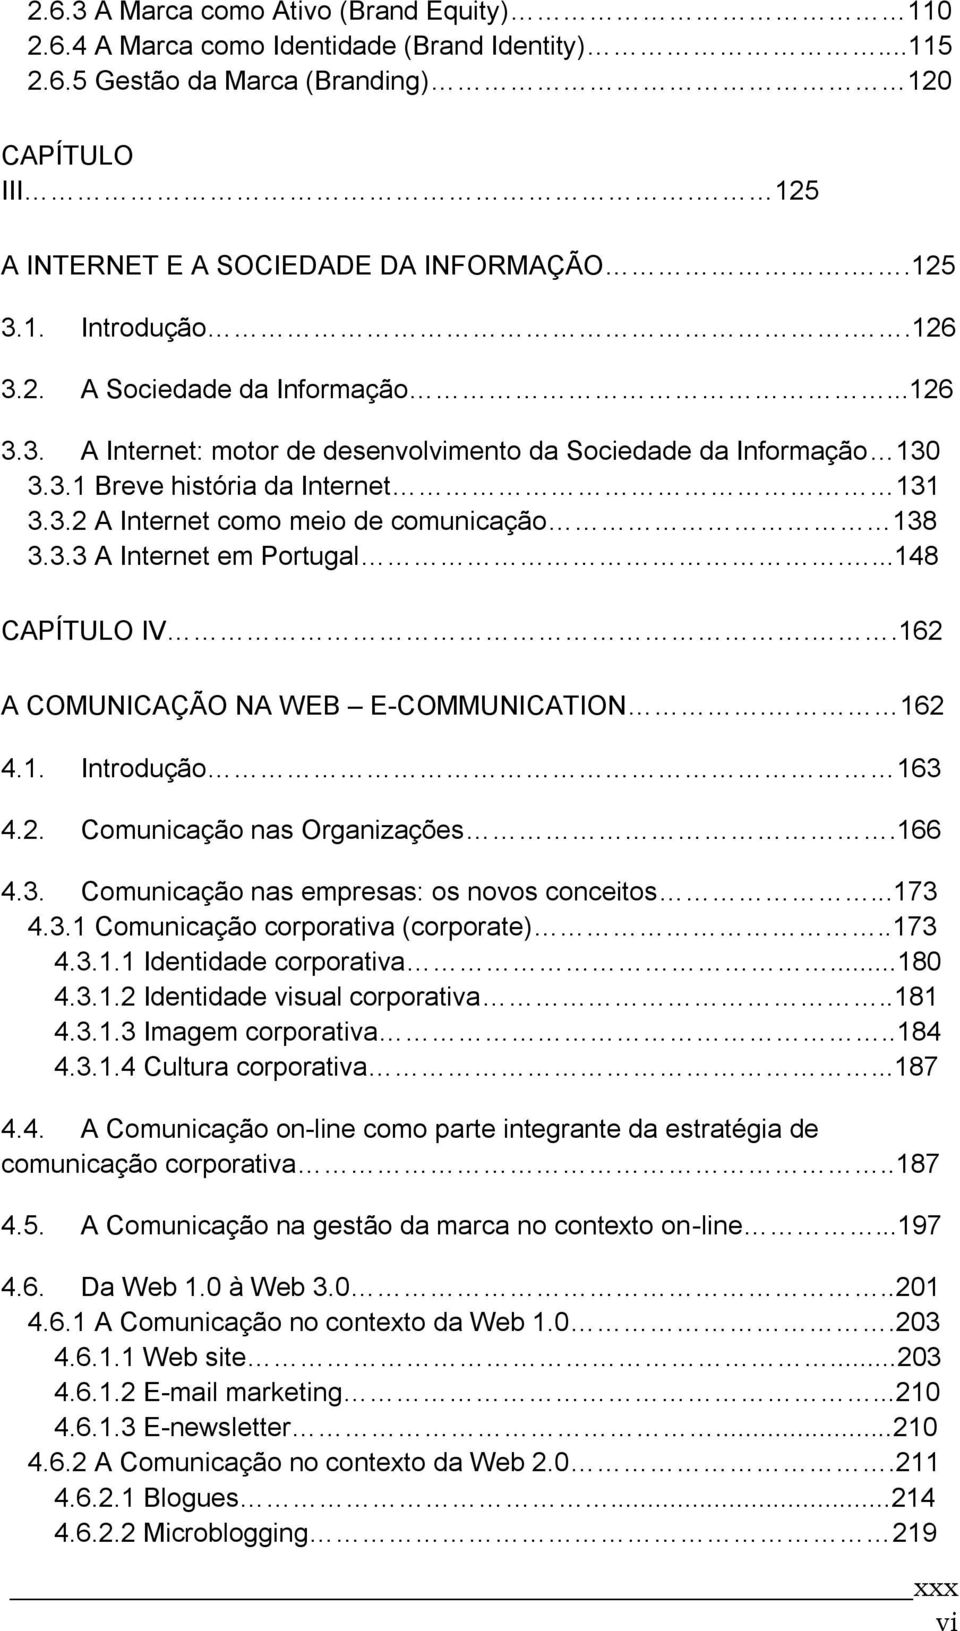 3.3 A Internet em Portugal....148 CAPÍTULO IV..162 A COMUNICAÇÃO NA WEB E-COMMUNICATION. 162 4.1. Introdução 163 4.2. Comunicação nas Organizações.166 4.3. Comunicação nas empresas: os novos conceitos.